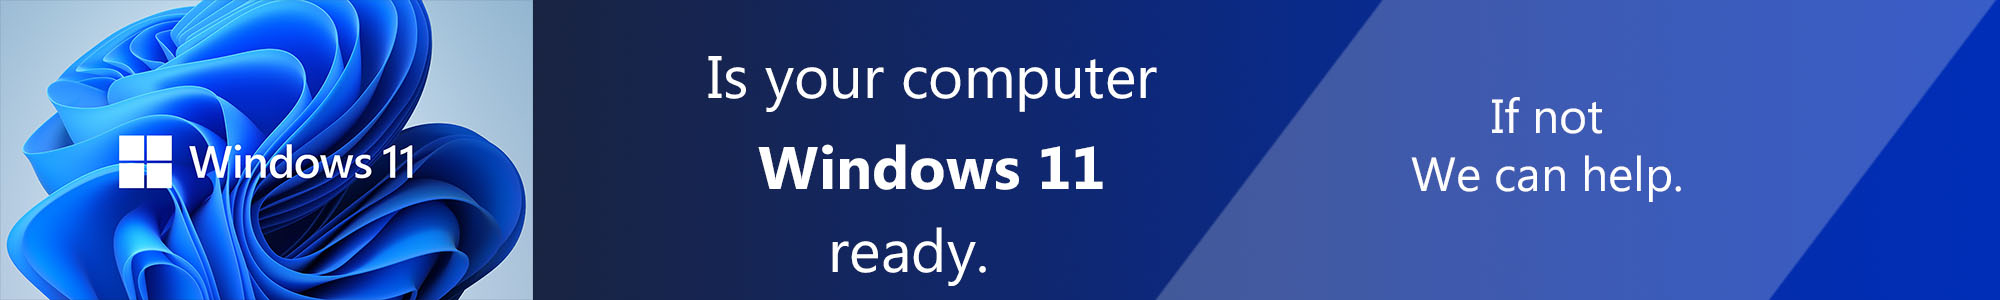 Windows 10 ready